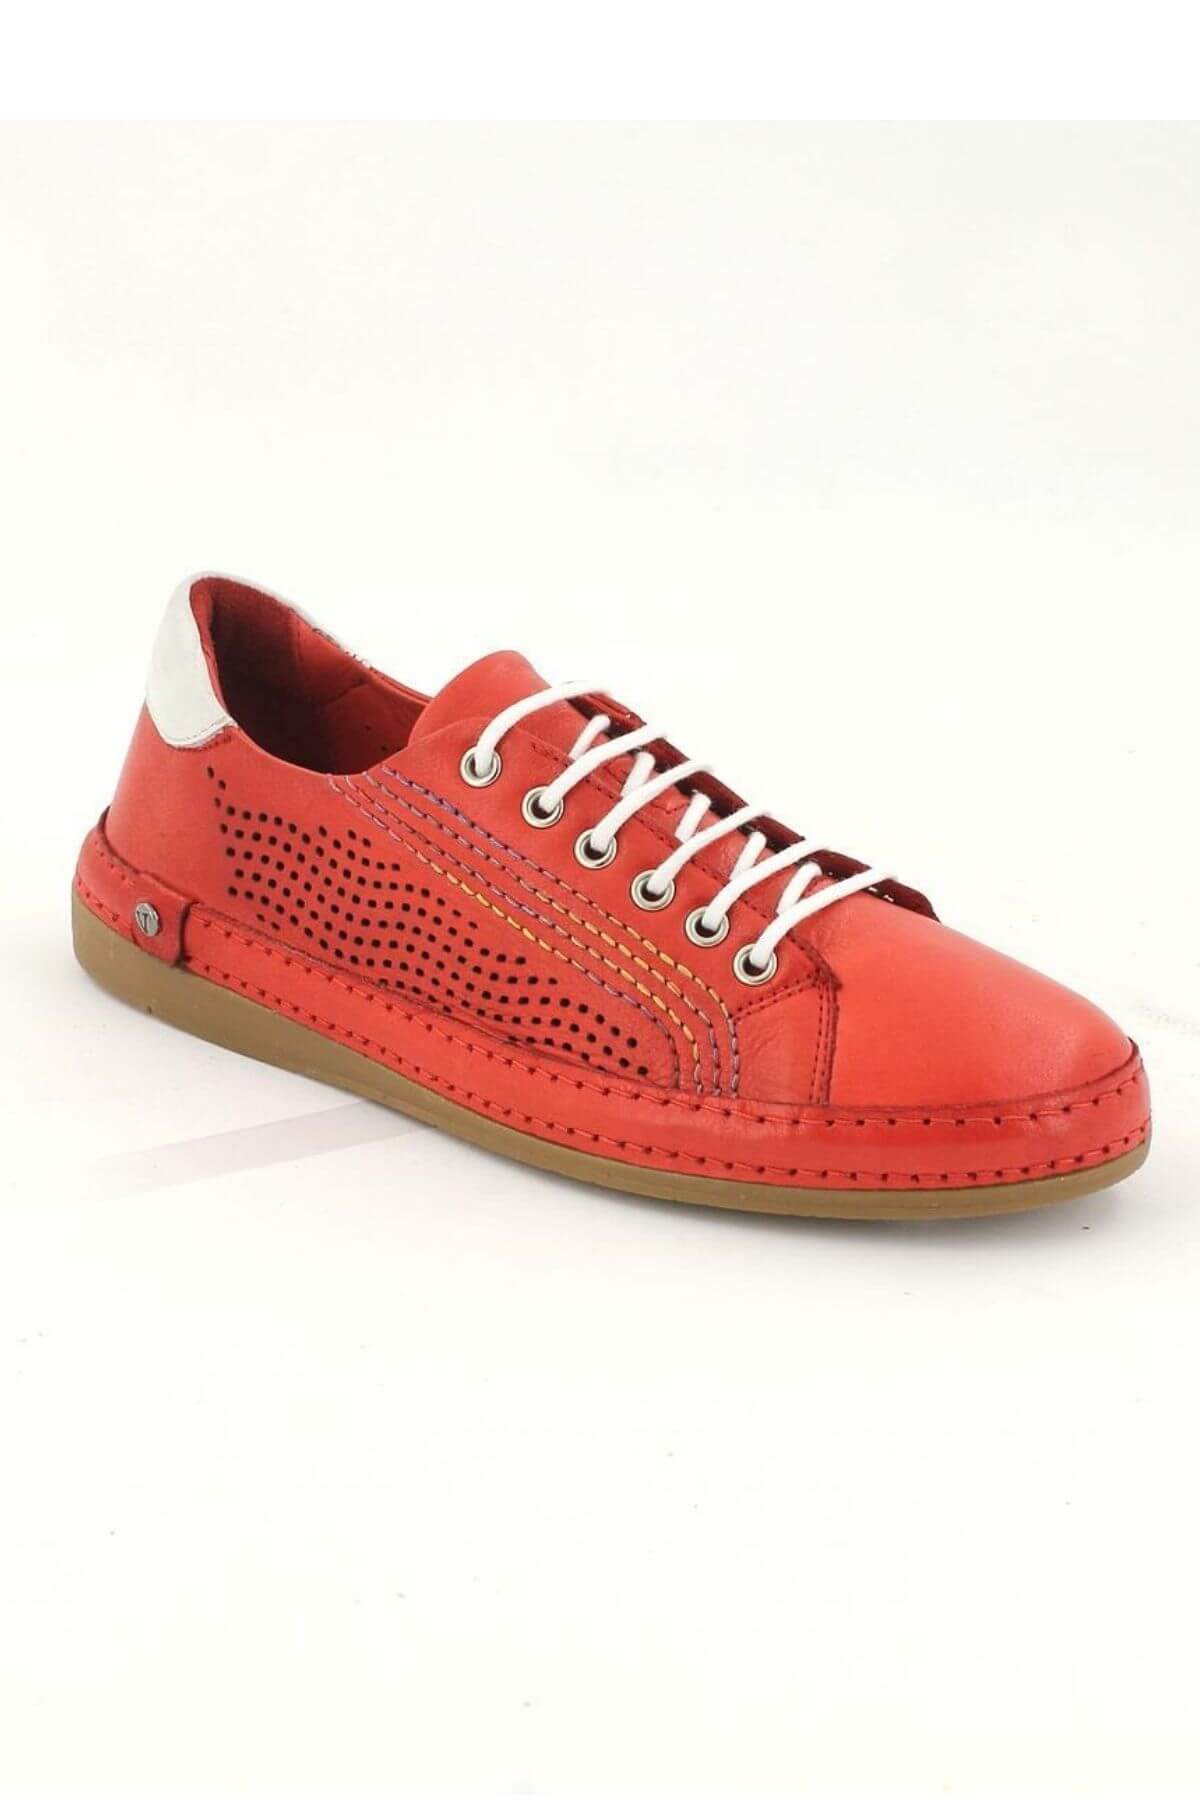 Kadın Comfort Deri Ayakkabı Kırmızı 2211204Y - Thumbnail